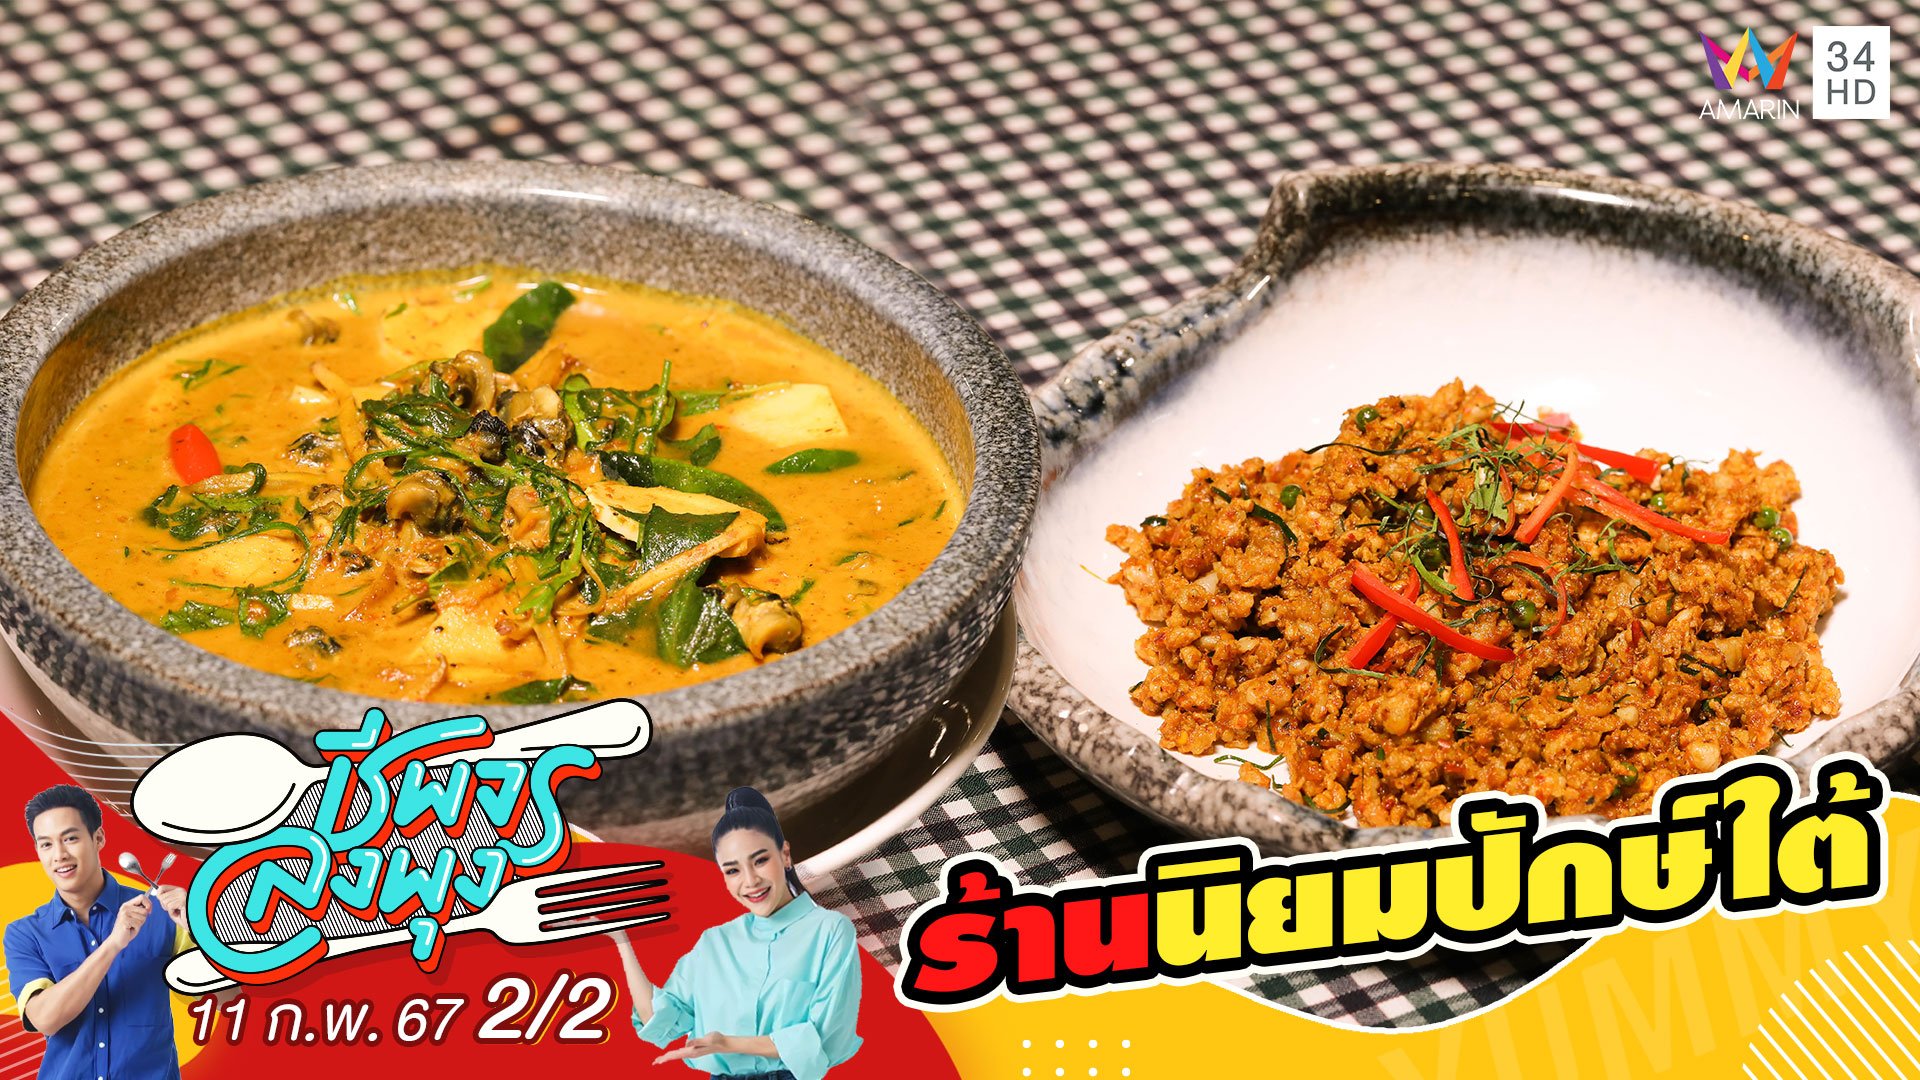 "ร้านนิยมปักษ์ใต้" ร้านอาหารใต้รสชาติท้องถิ่น | ชีพจรลงพุง | 11 ก.พ. 67 (2/2) | AMARIN TVHD34